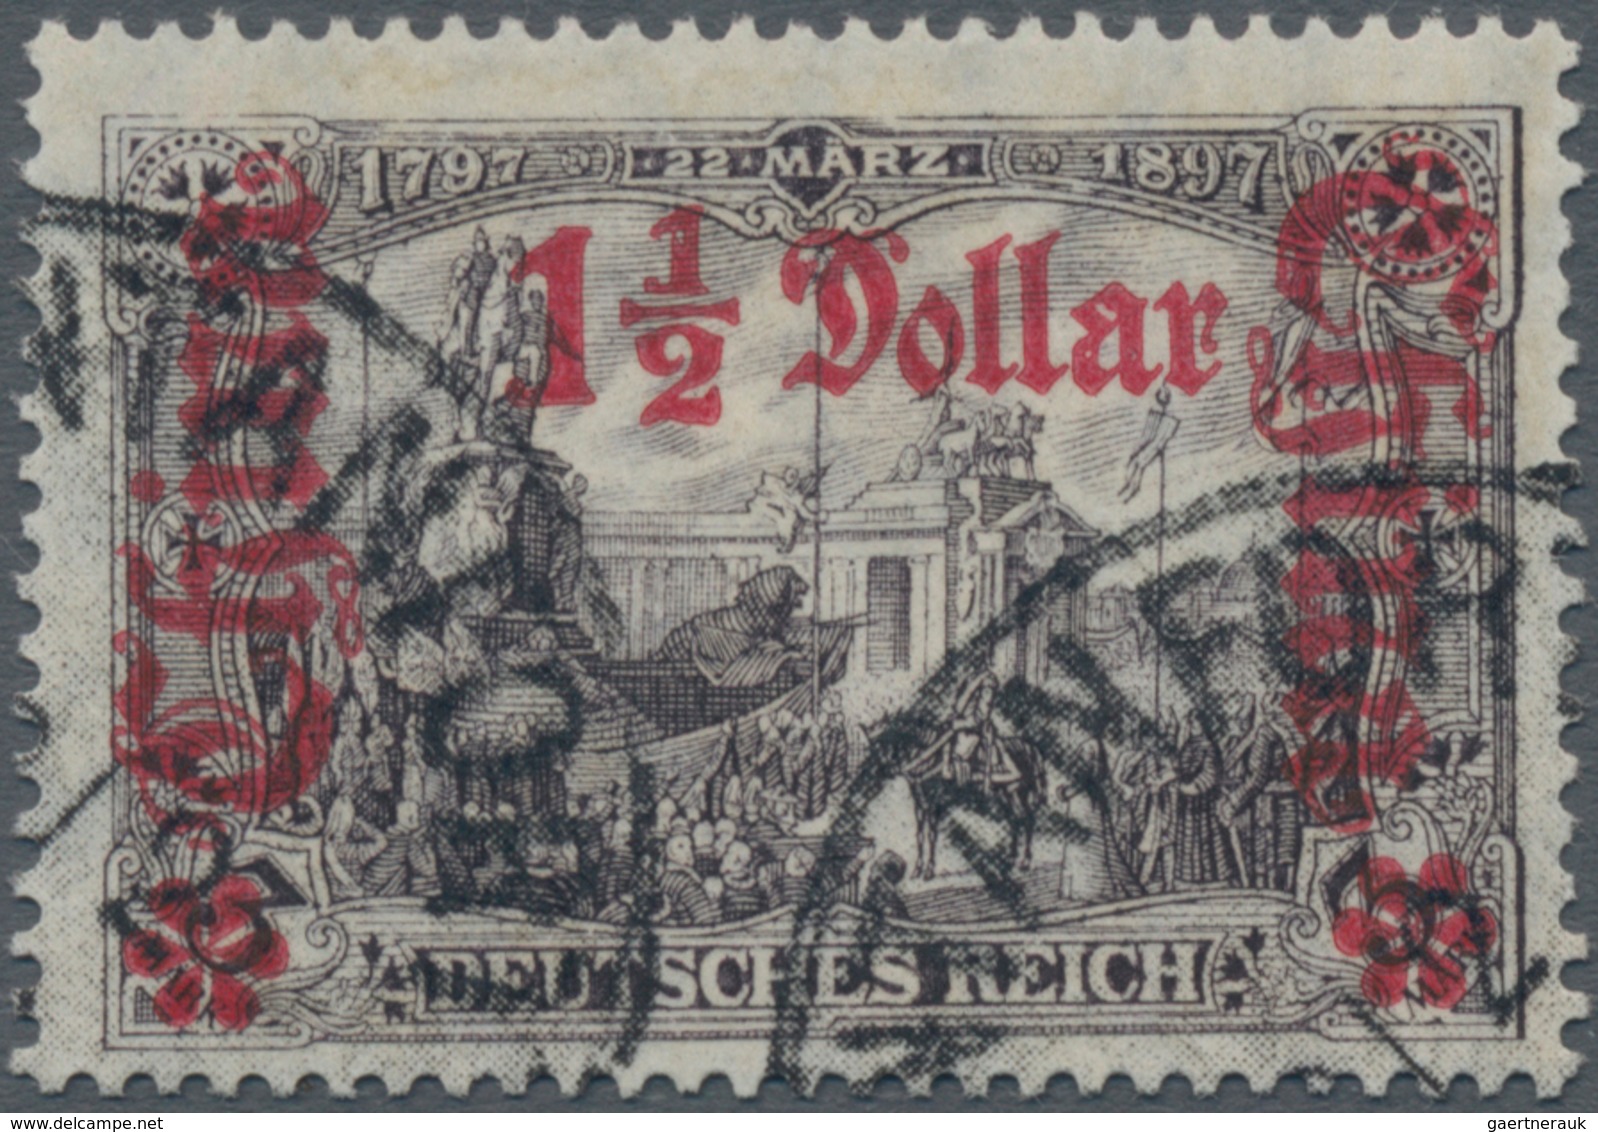 Deutsche Post In China: 1913, "1 1/2 Dollar Auf 3 Mark" Friedensdruck, 26:17 Zähnungslöcher, Schwarz - Chine (bureaux)